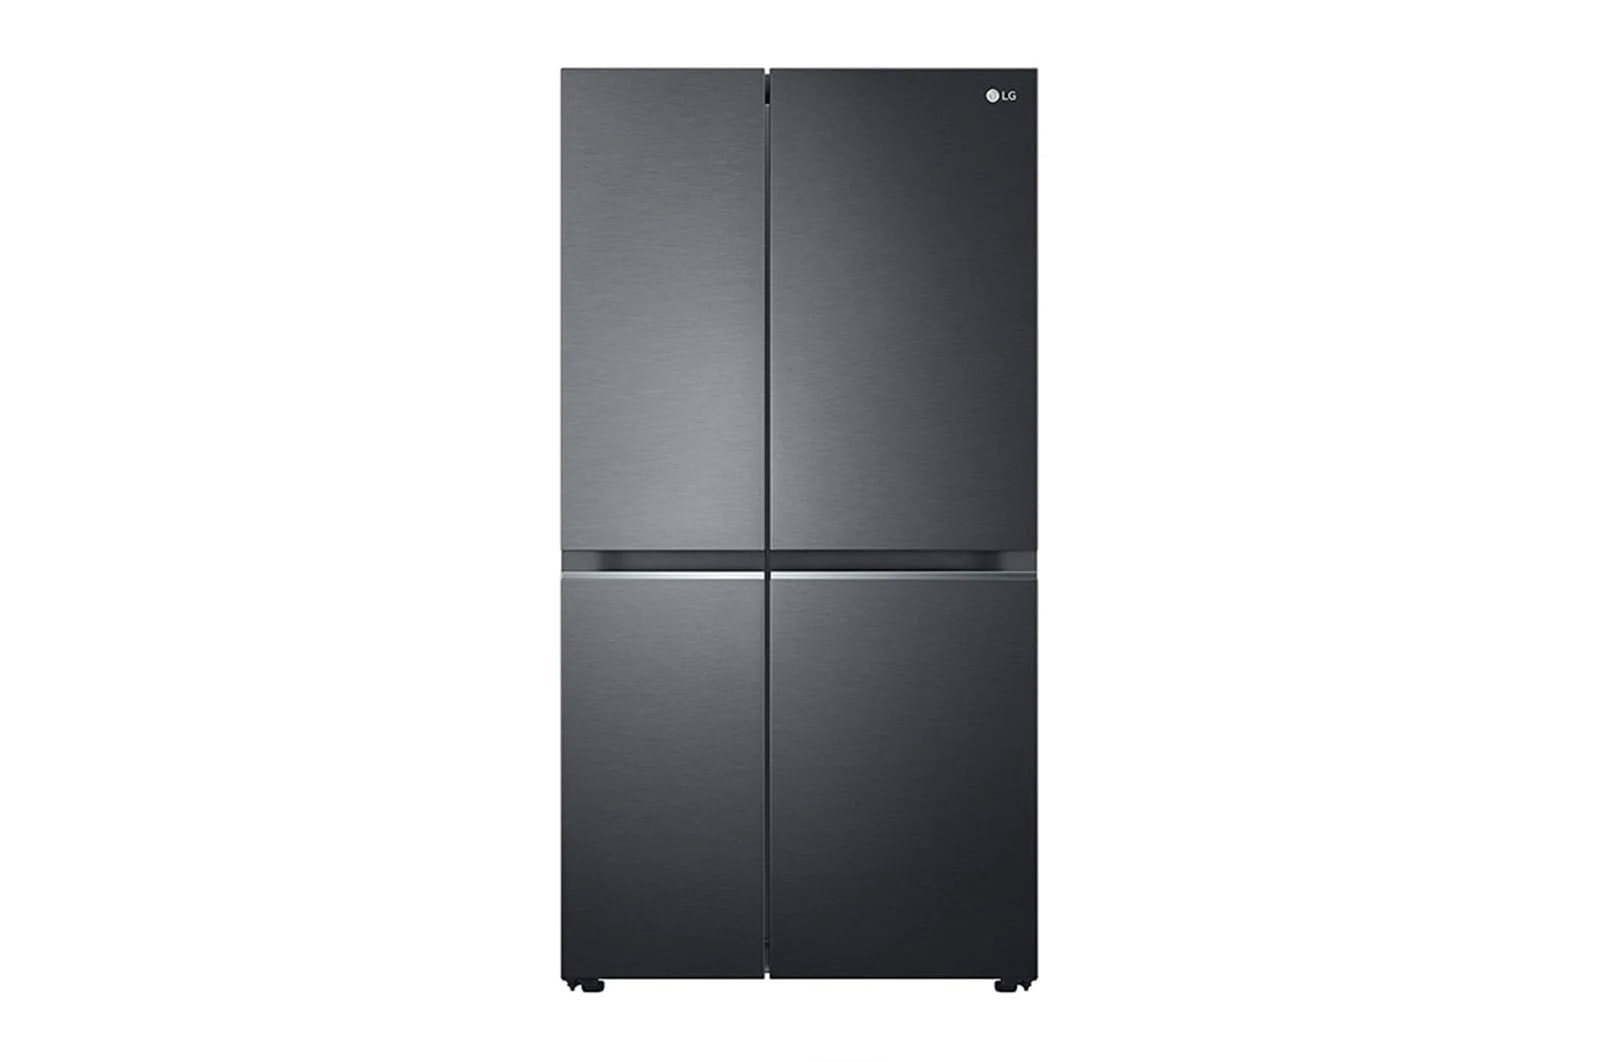 LG 647L side-by-side-fridge with Linear Compressor in Matt Black, GS-B6472MC